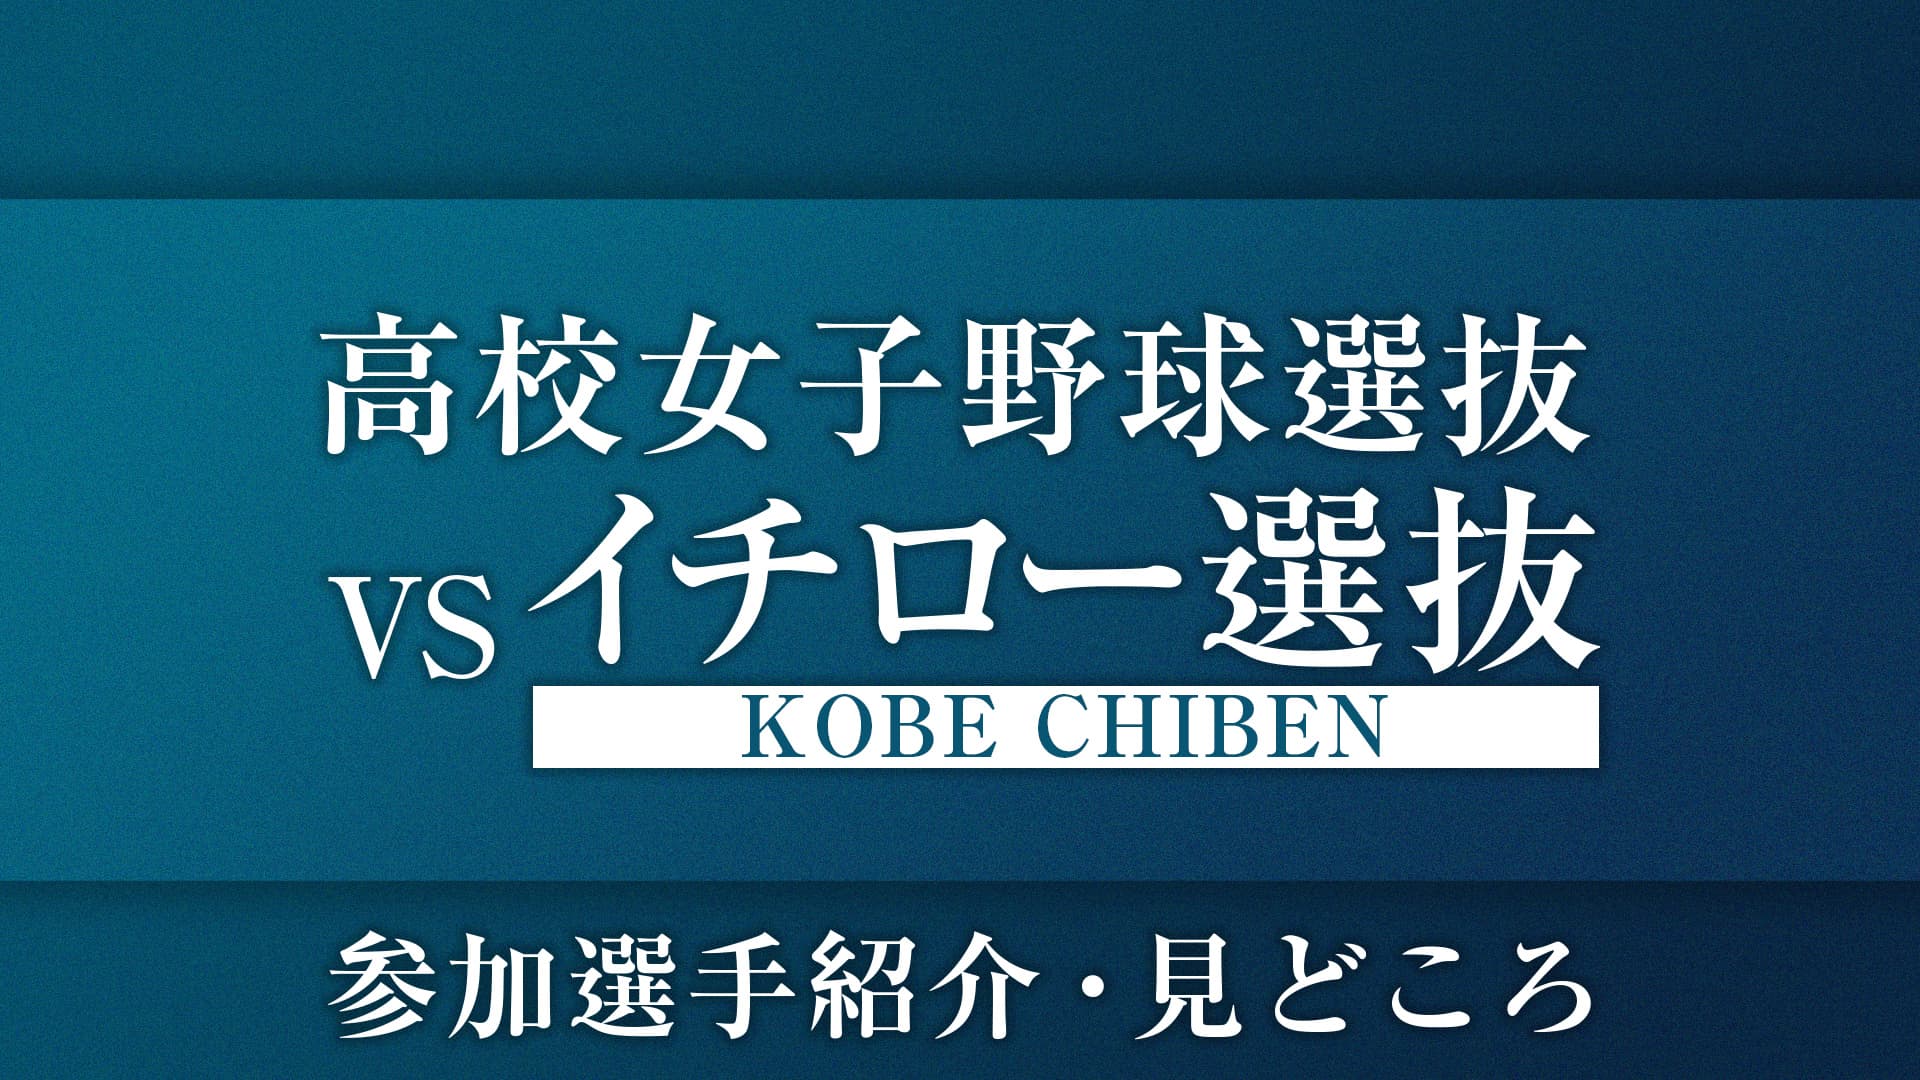 高校女子野球選抜 vs イチロー選抜KOBE CHIBEN 〜参加選手紹介・見どころ〜